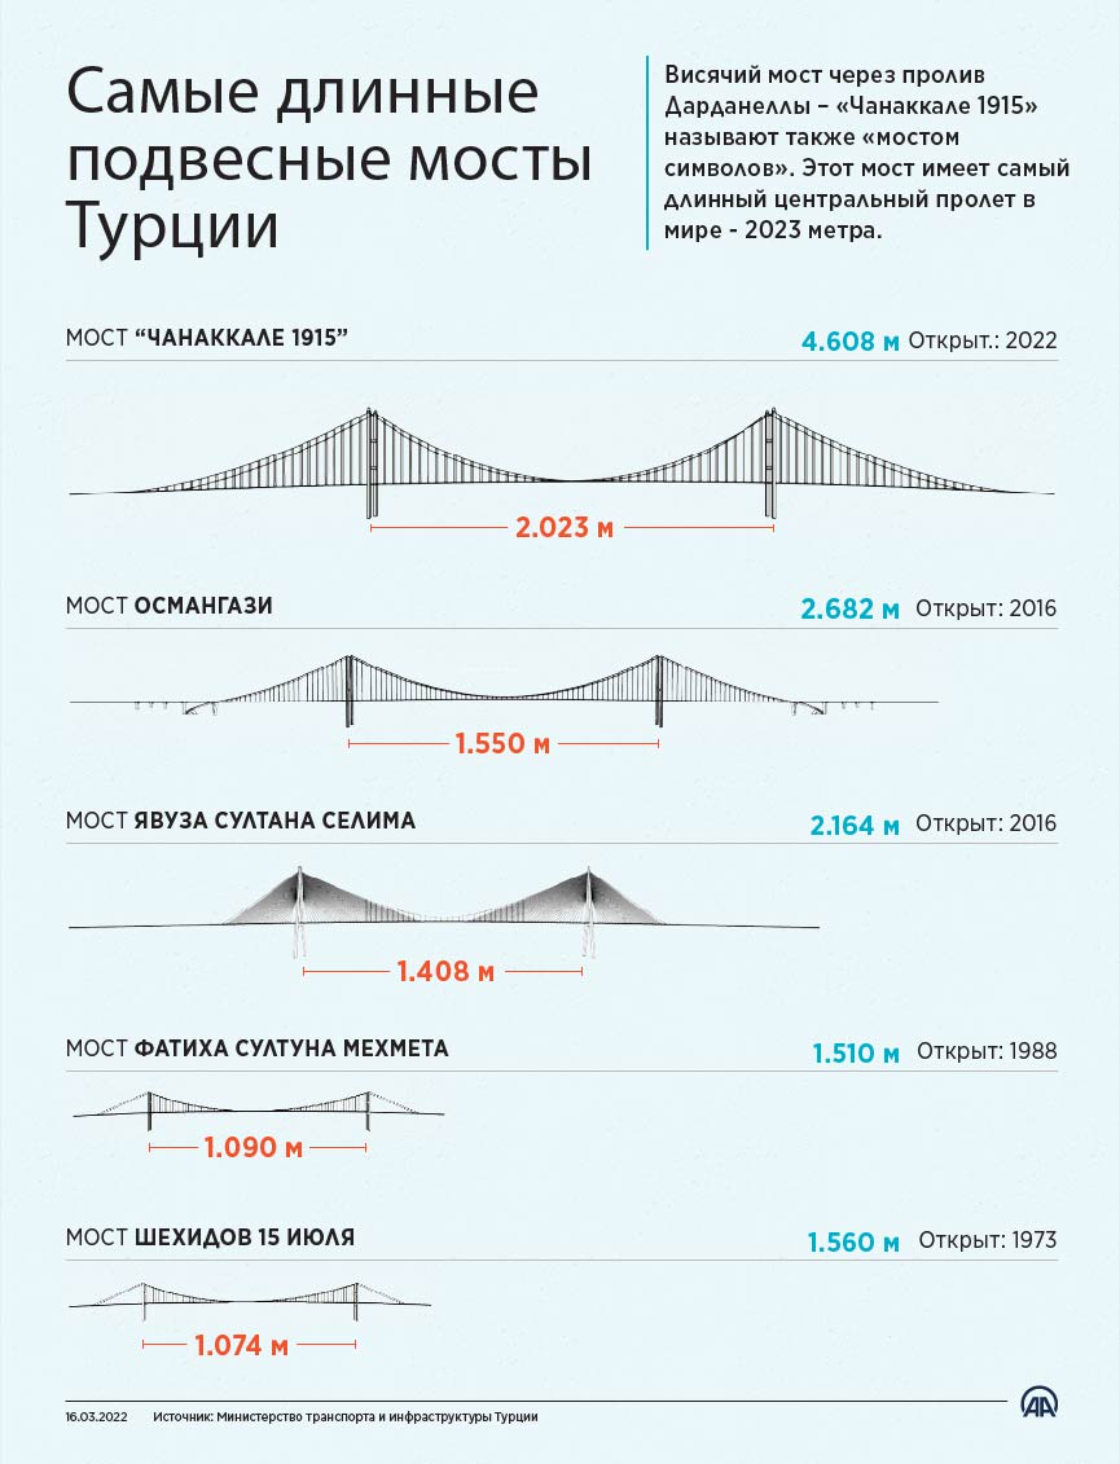 Самые длинные подвесные мосты Турции